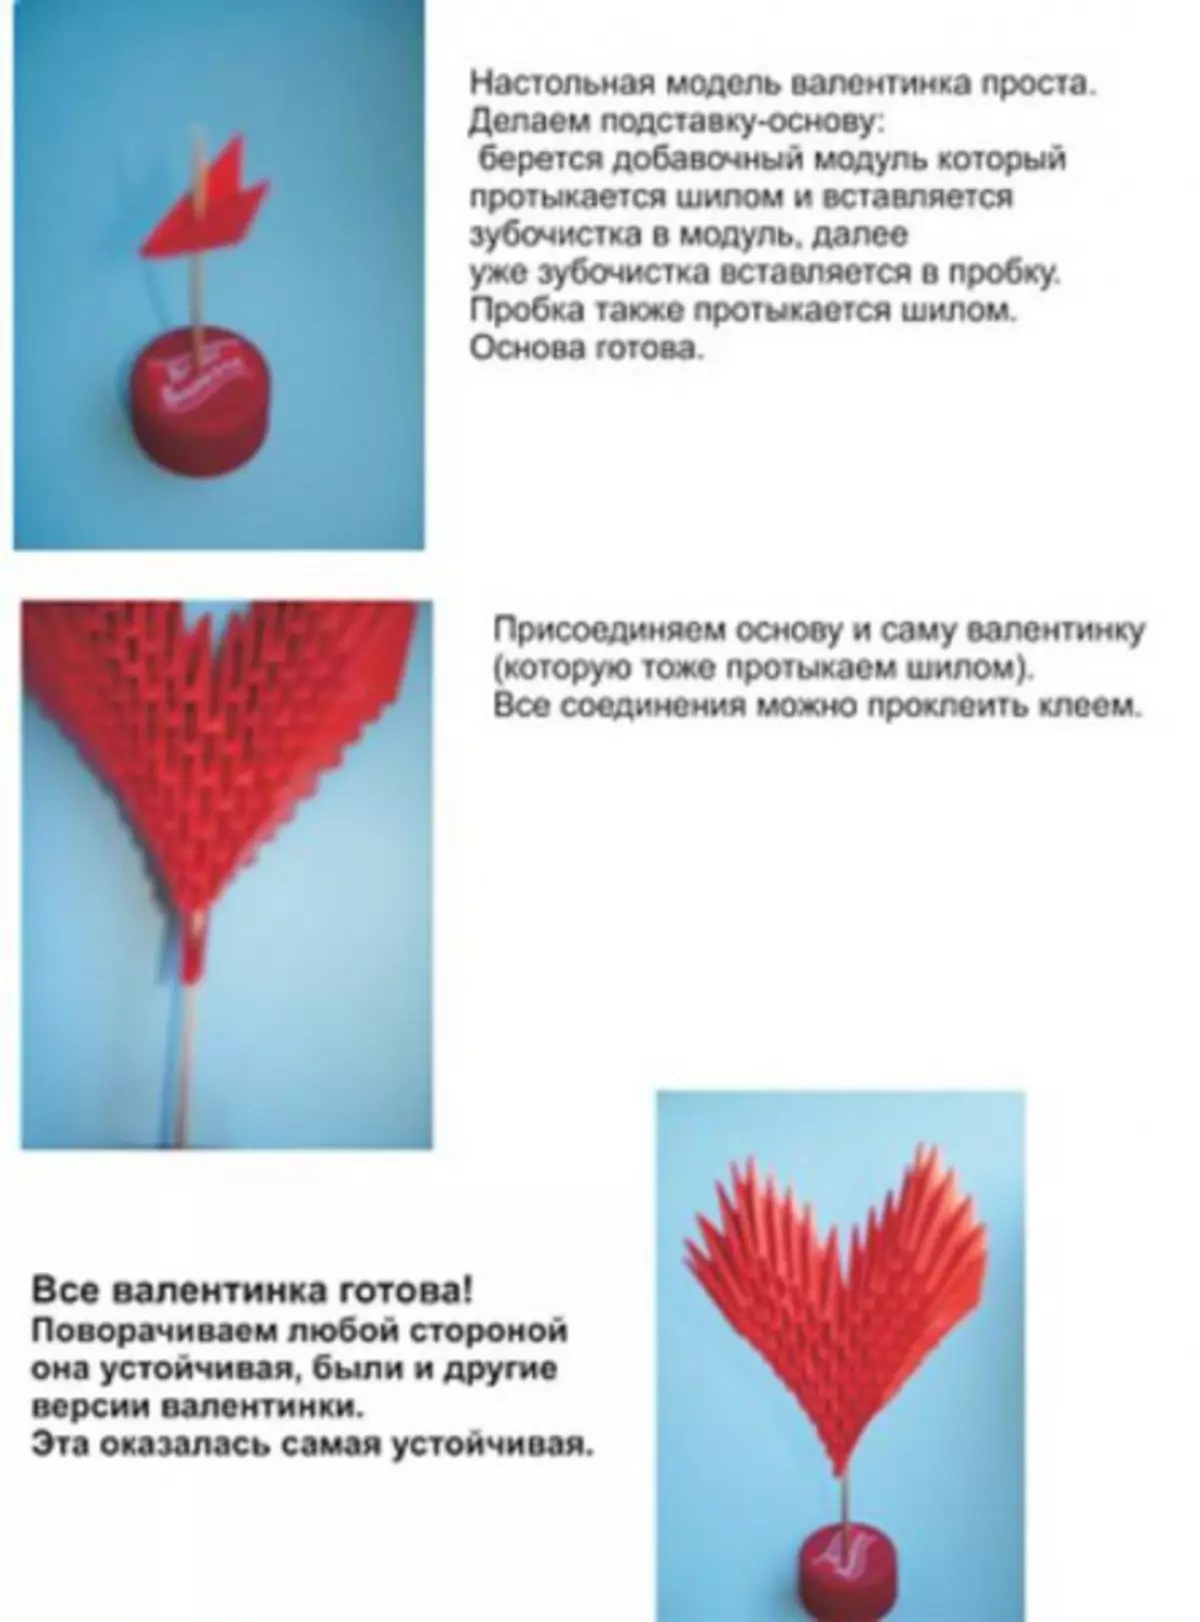 Origami schémata z modulů v ruštině: jednoduché lekce pro začátečníky